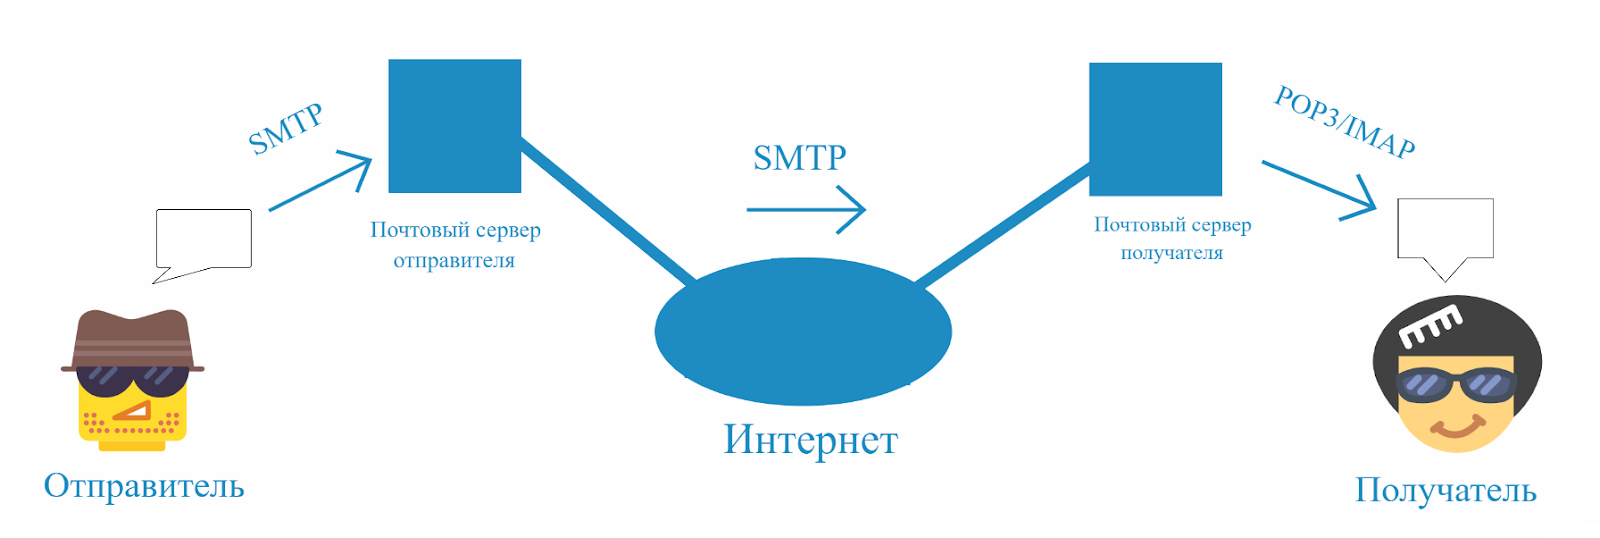 Smtp user. Pop3 и SMTP схема. SMTP протокол схема. Почтовый сервер SMTP. Схема работы SMTP.